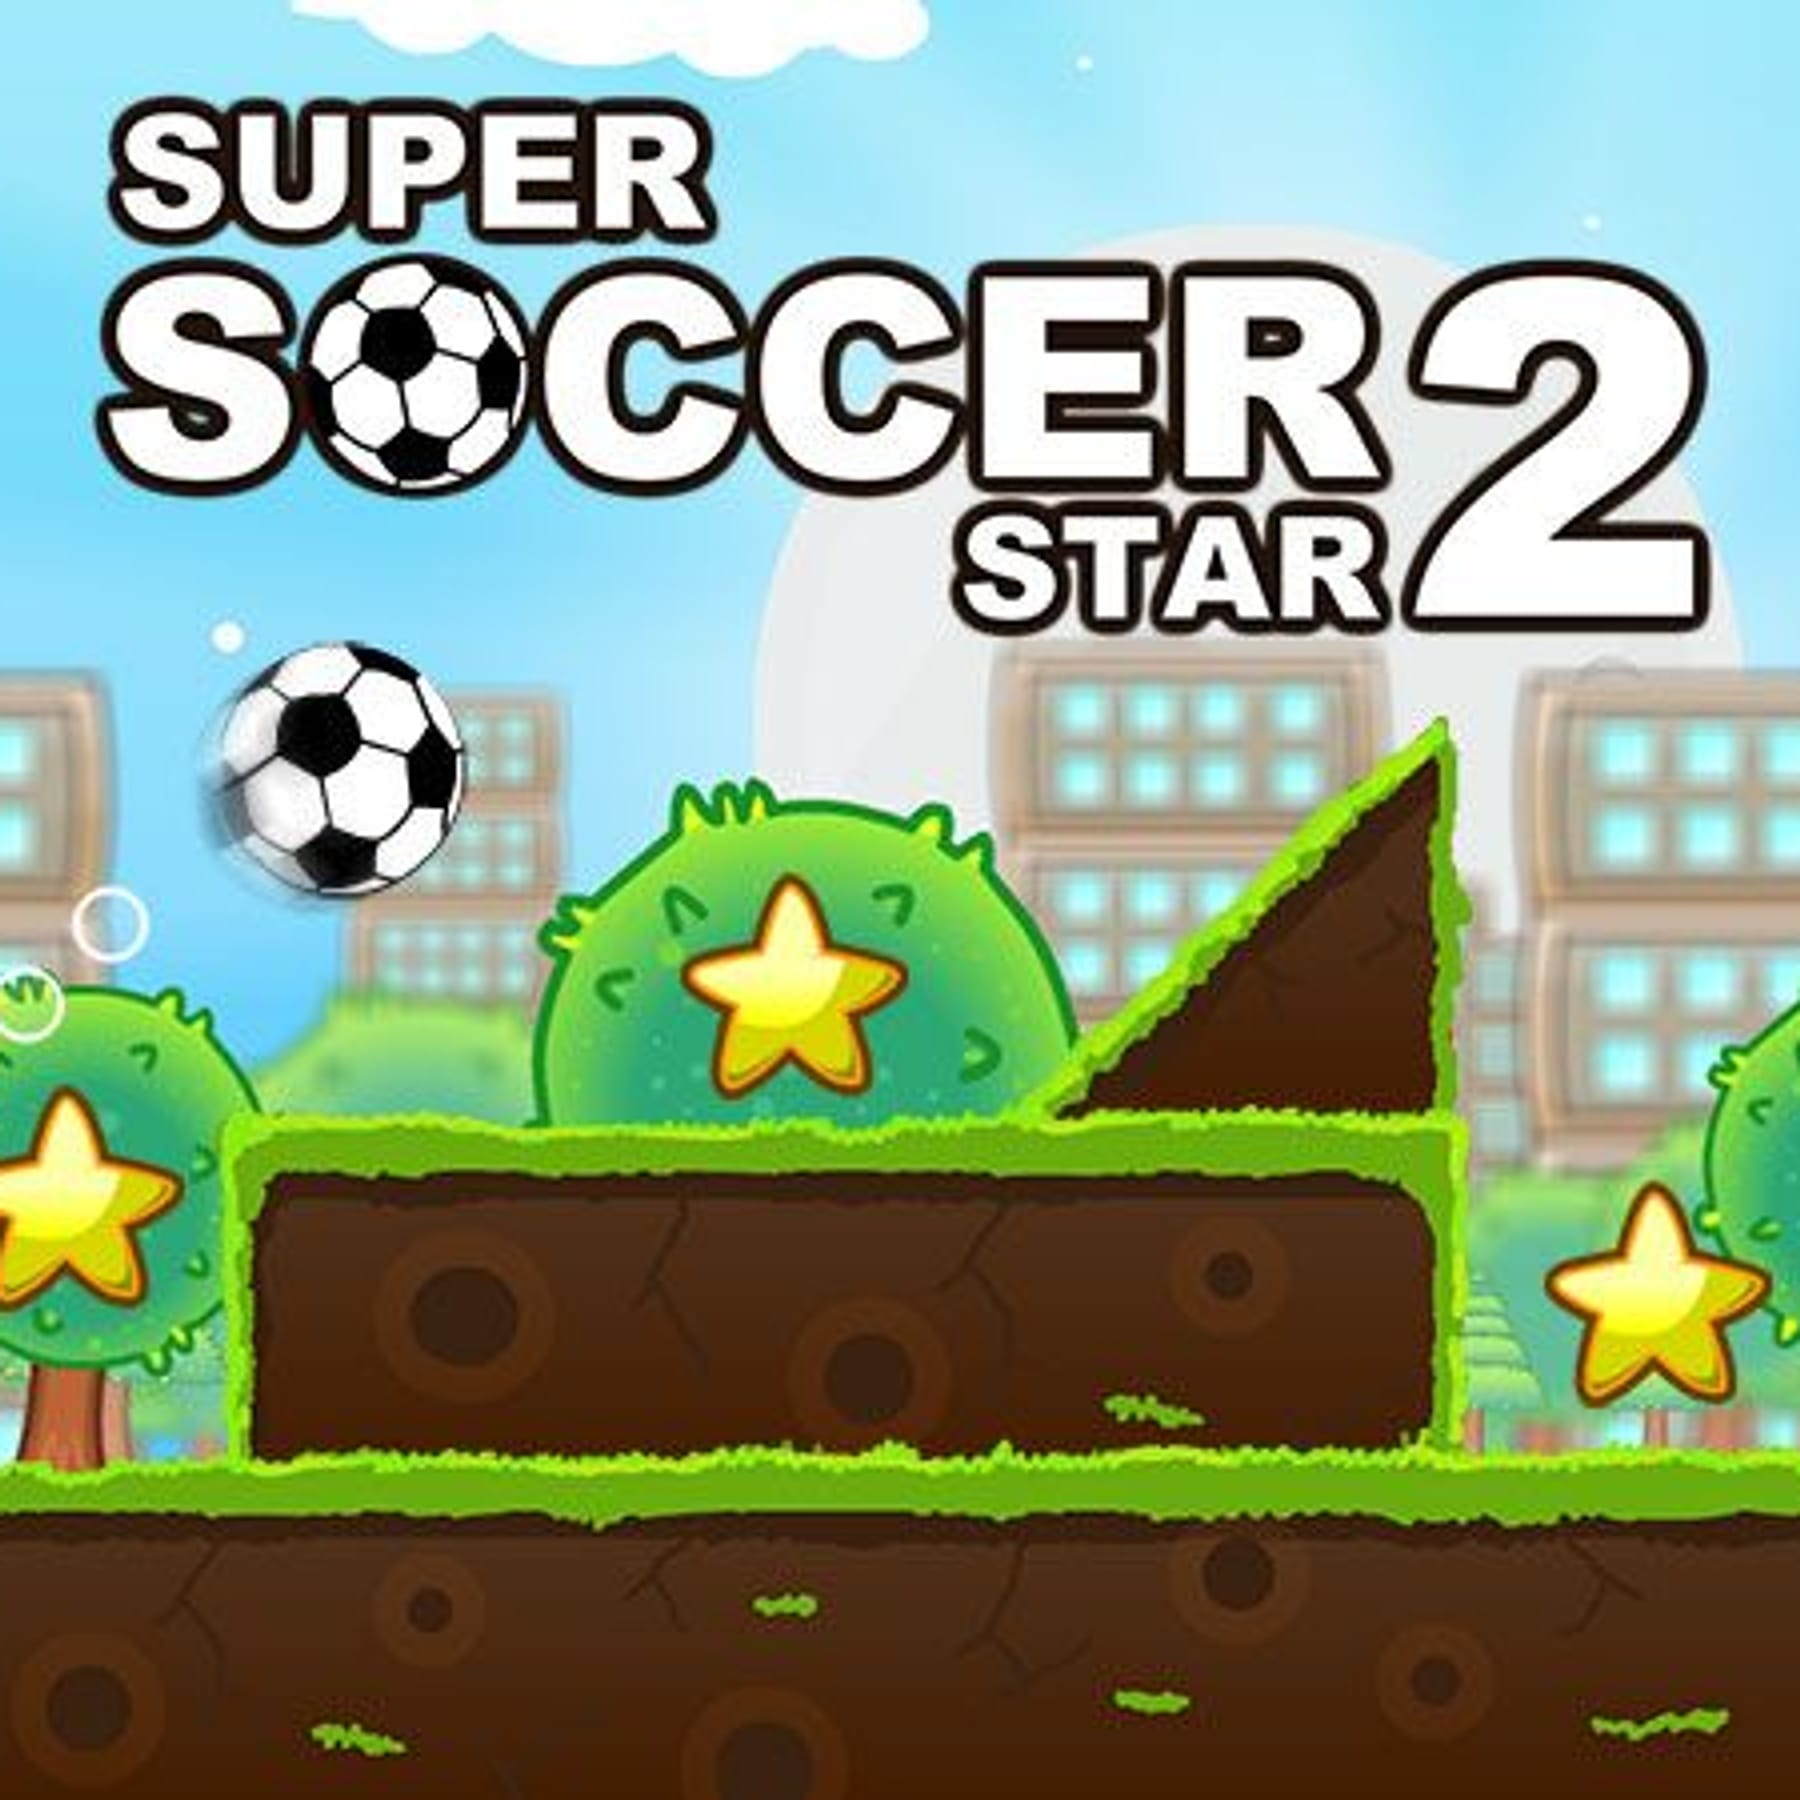 Super Soccer Star 2 kostenlos online spielen bei t-online.de